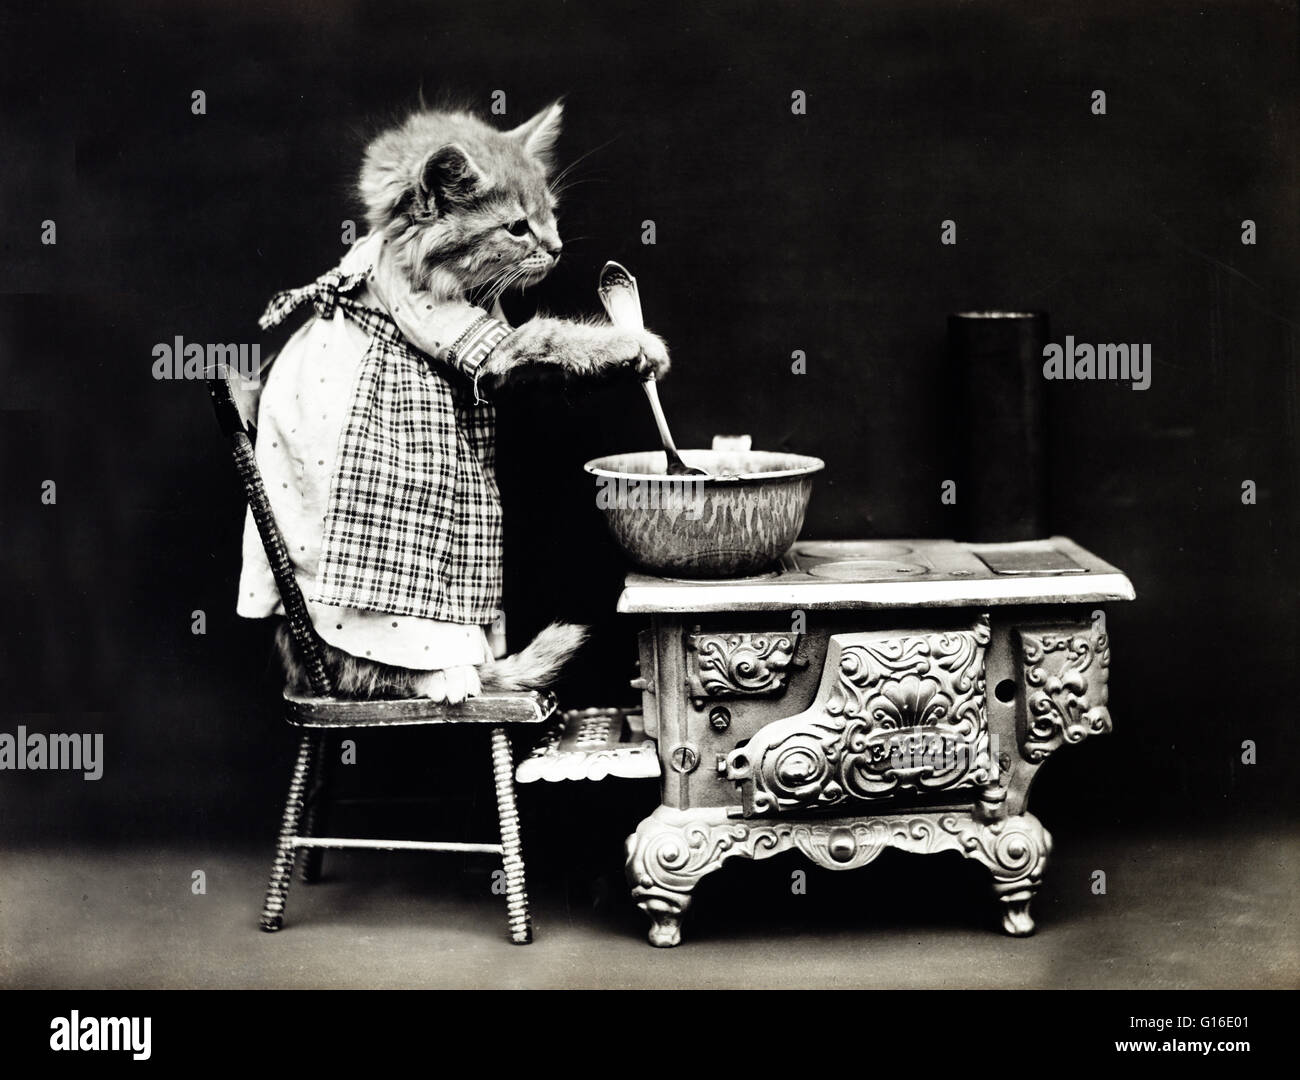 Titel: "Der Koch" zeigt eine Kätzchen trägt ein Kleid und rühren bei einem Herd. Harry Whittier befreit (1879-1953) war ein US-amerikanischer Fotograf, der lebende Tiere gekleidet und posierte in menschlichen Situationen mit Requisiten fotografiert. Seine tierischen Fotos wurden auf besondere Stockfoto